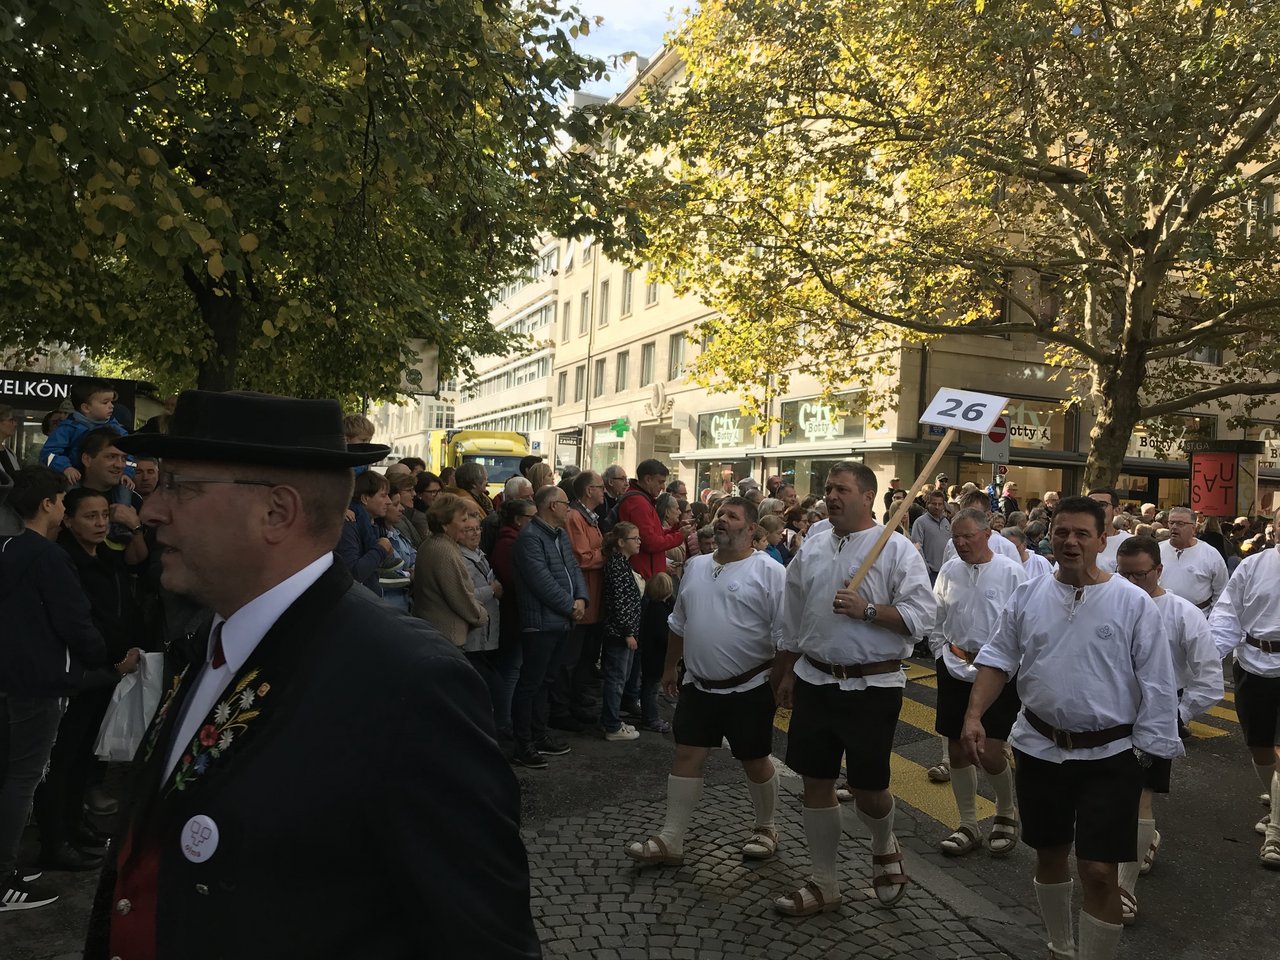 Der Jodlerklub Tälläbuebä aus dem urnerischen Attinghausen tragen die Tracht unseres Nationalhelden.